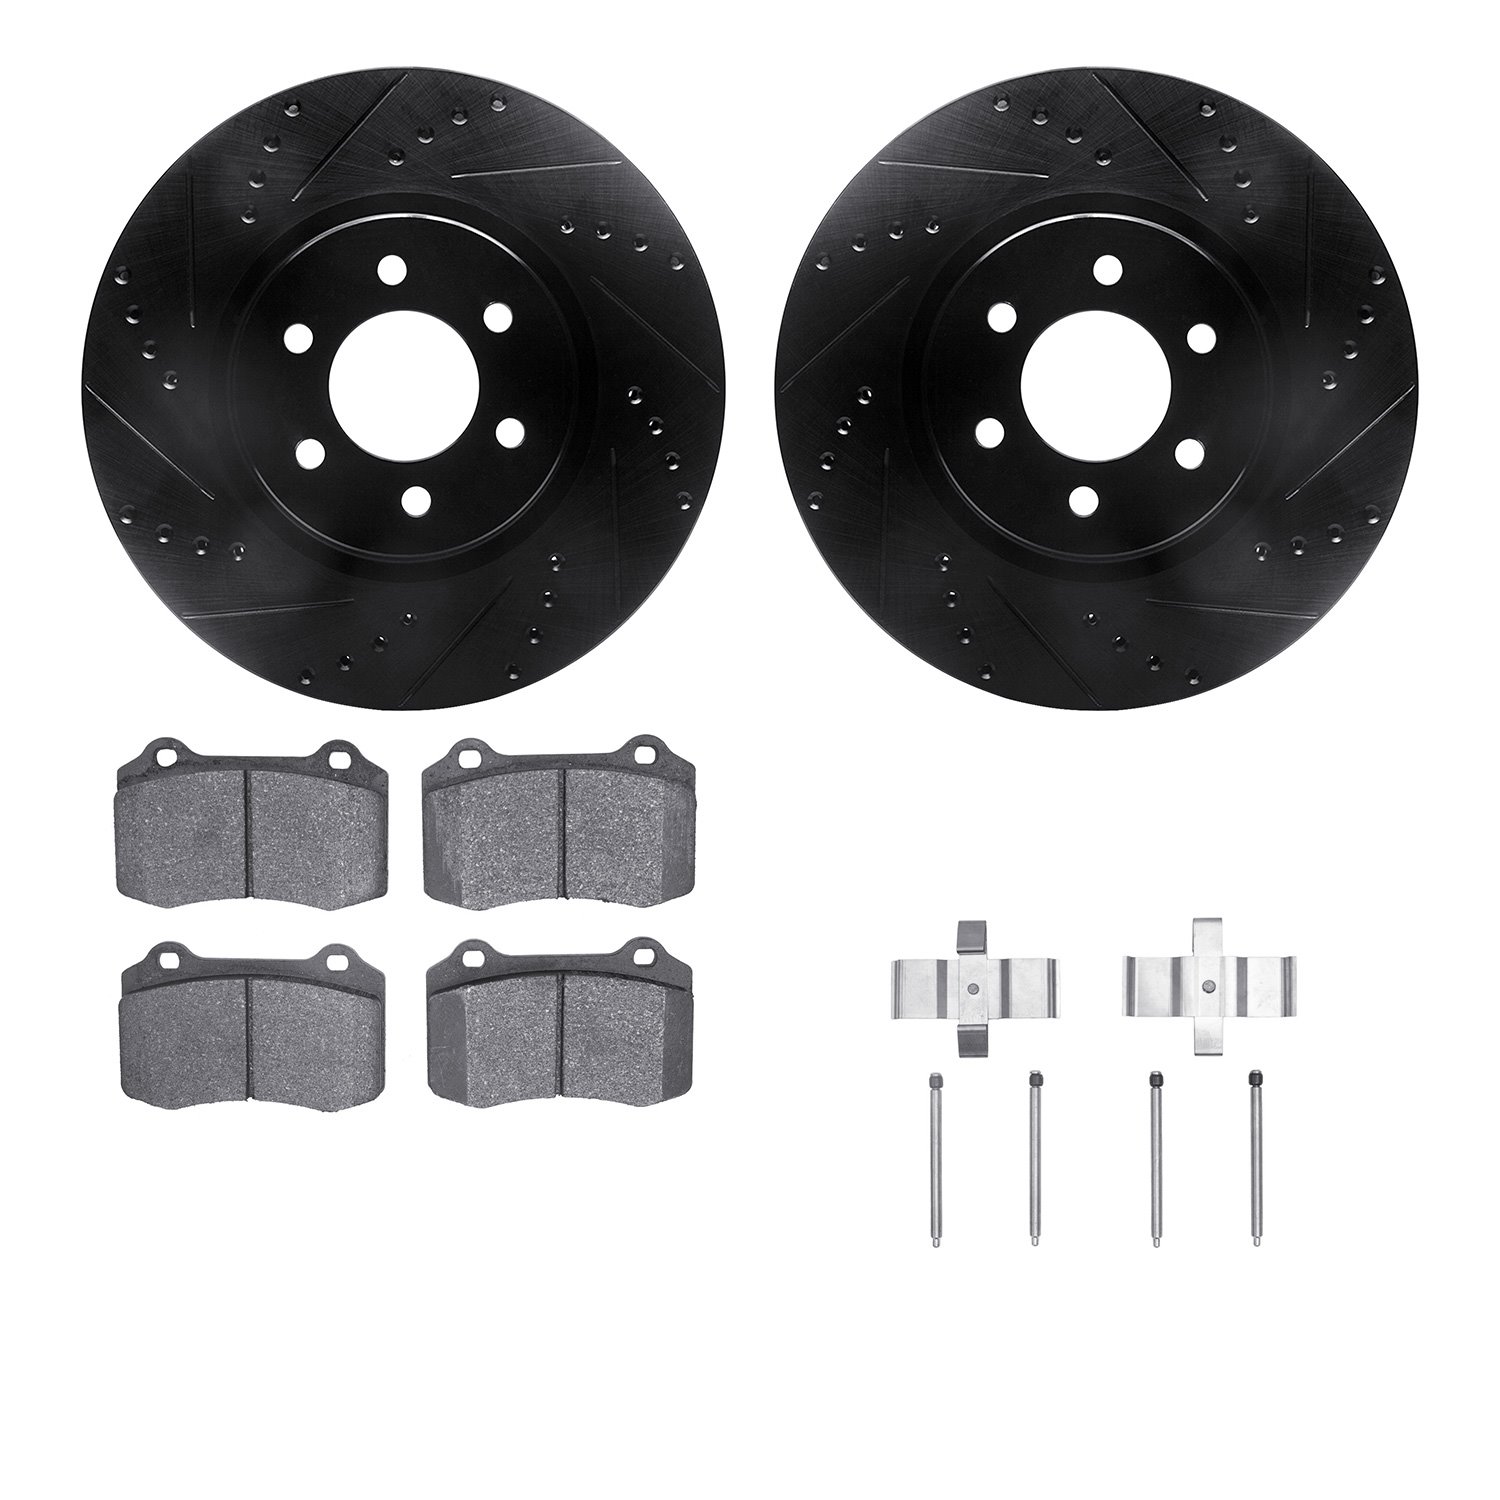 8512-40018 Drilled/Slotted Brake Rotors w/5000 Advanced Brake Pads Kit & Hardware [Black], 1992-2002 Mopar, Position: Front